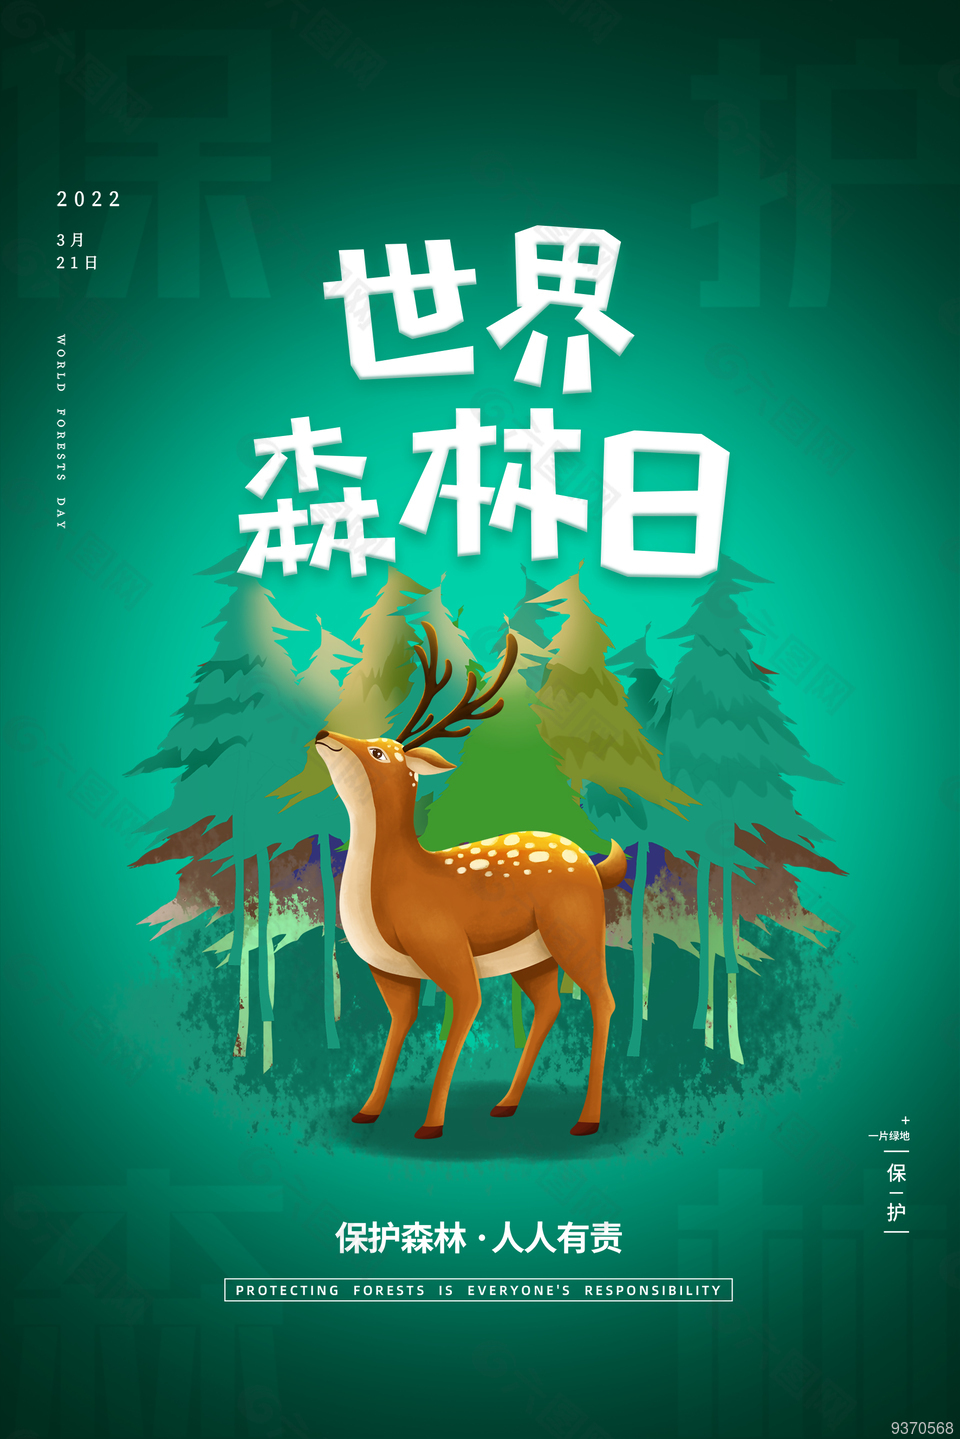 321世界森林日创意海报